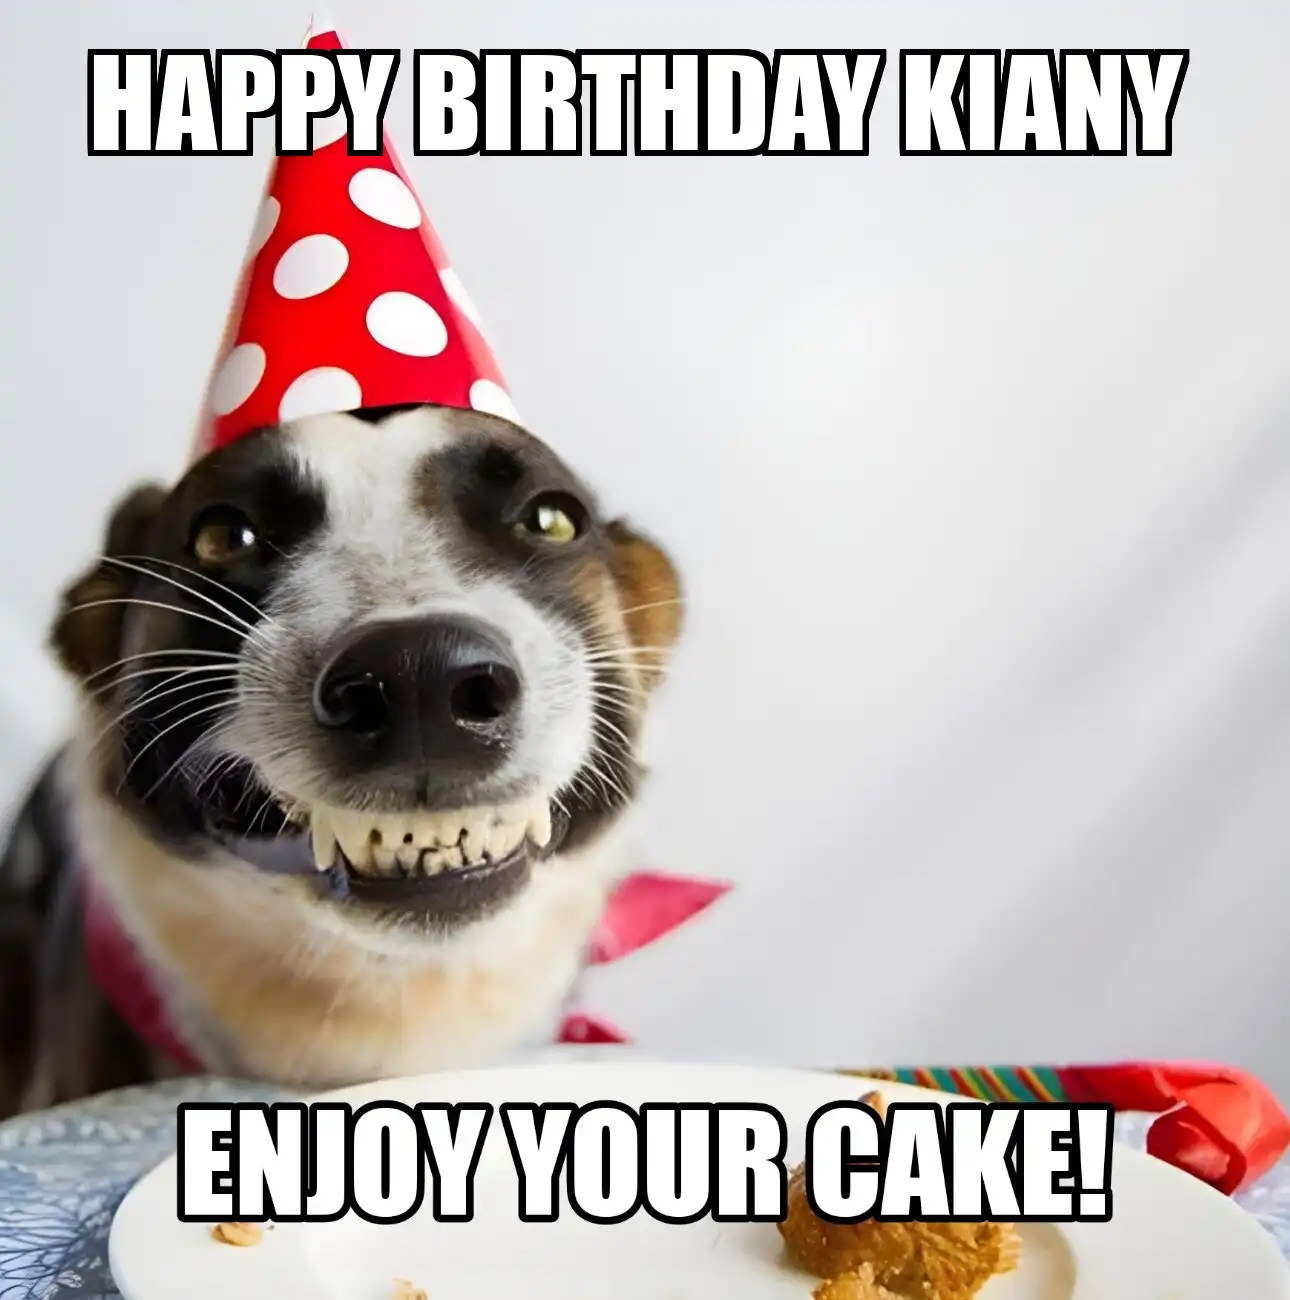 Happy Birthday Kiany Enjoy Your Cake Dog Meme